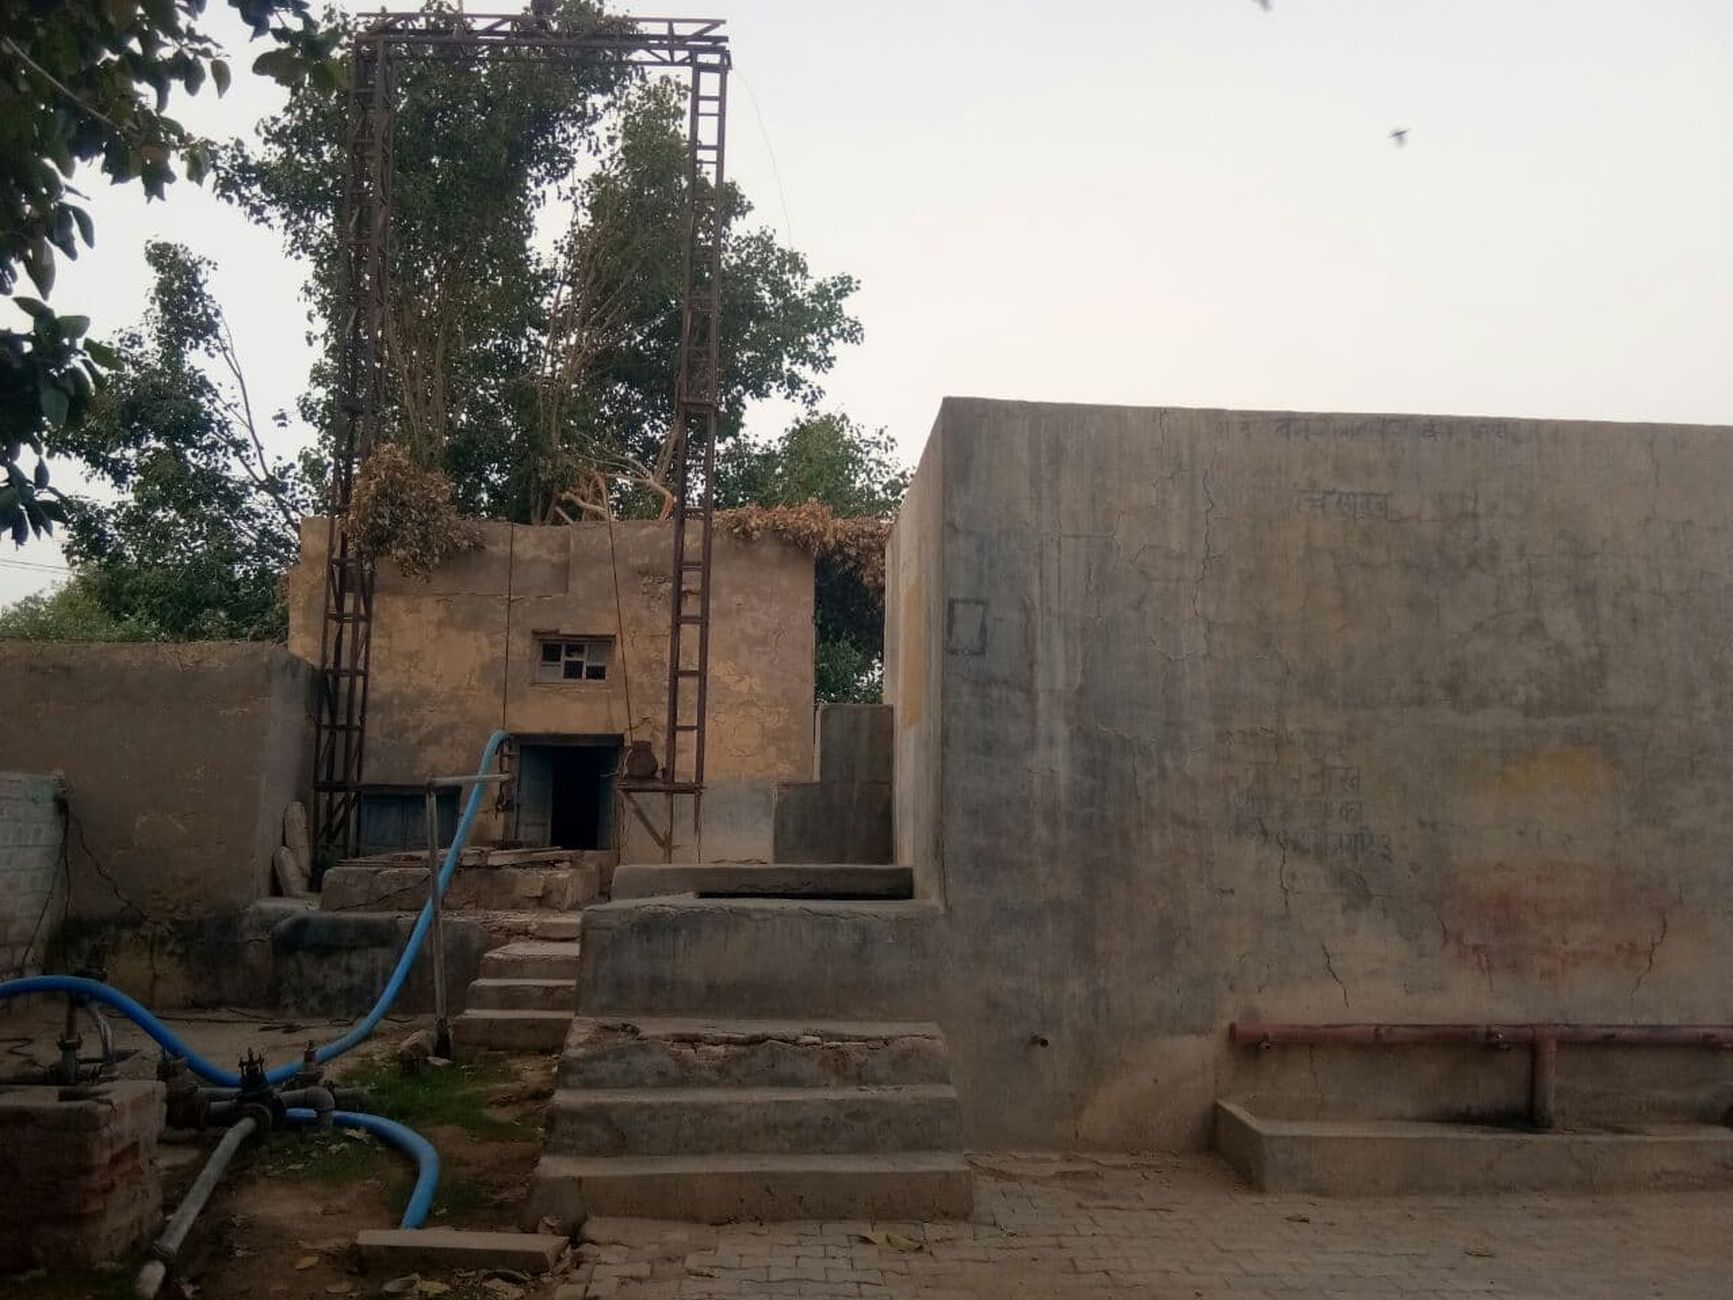 जैसलमेर जिले के अंतिम छोर पर बसे चार गांवों की बुझेगी प्यास